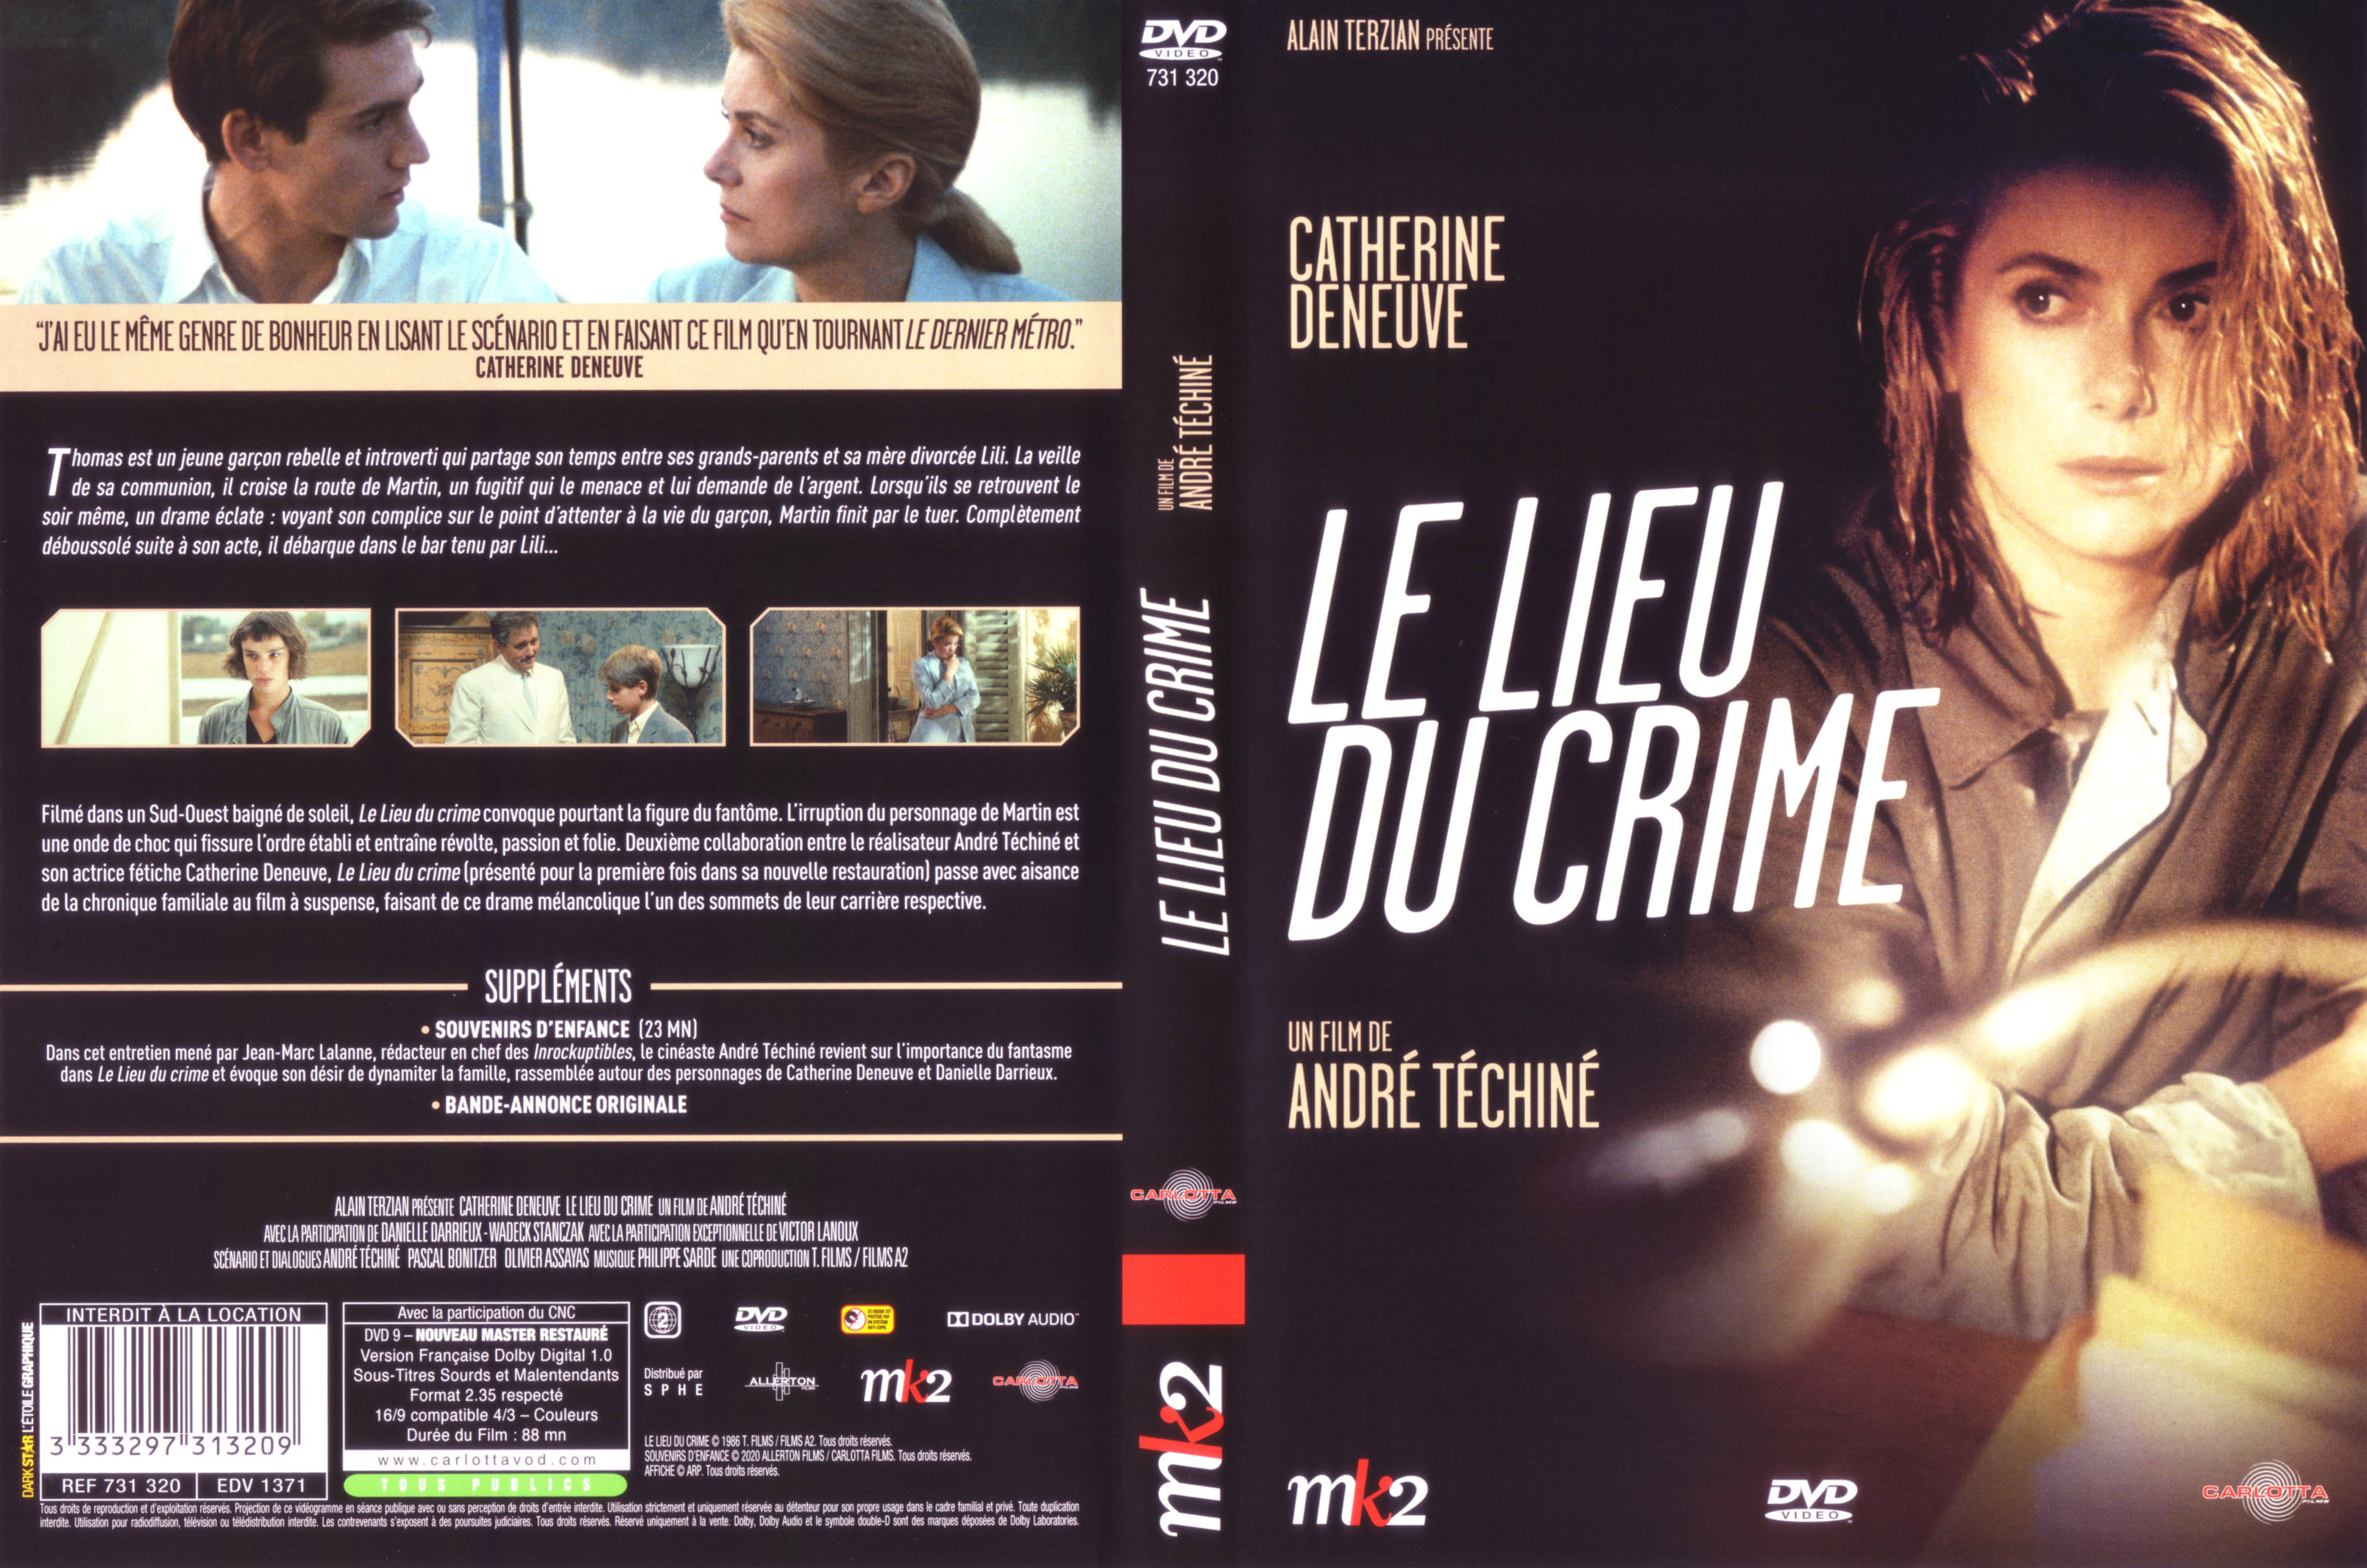 Jaquette DVD Le lieu du crime